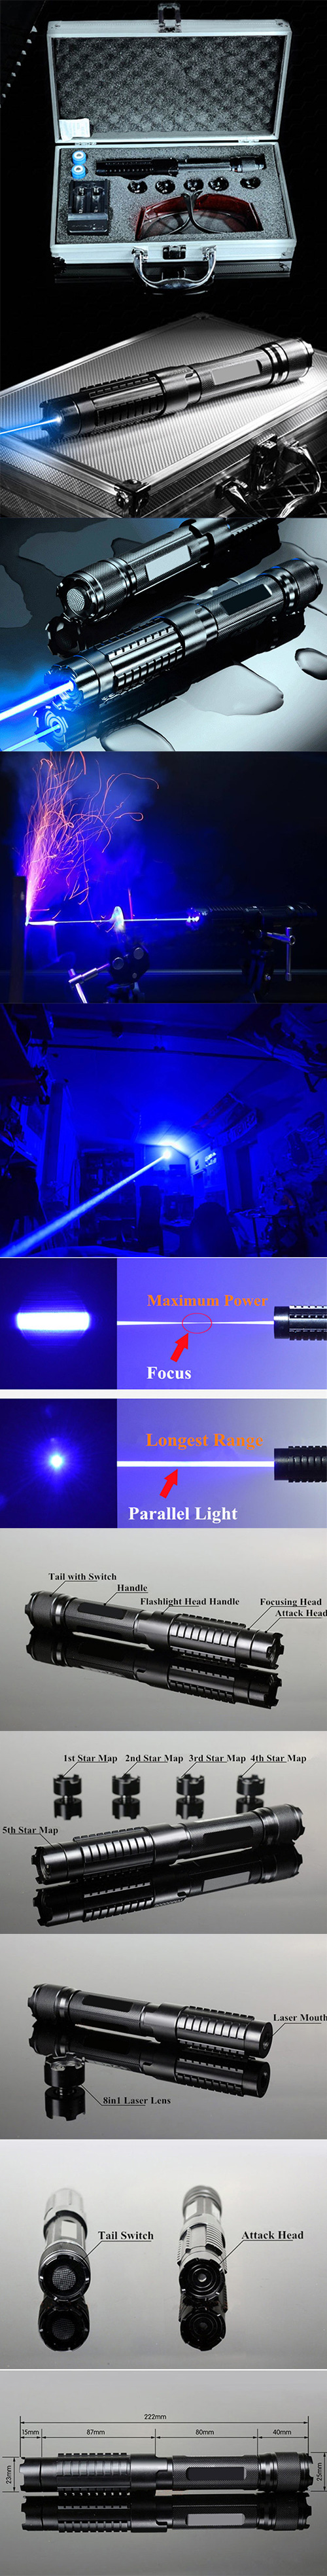 30000mW 450nm Blue Beam Light 5-in-1 Laserpointer Kit Schwarz